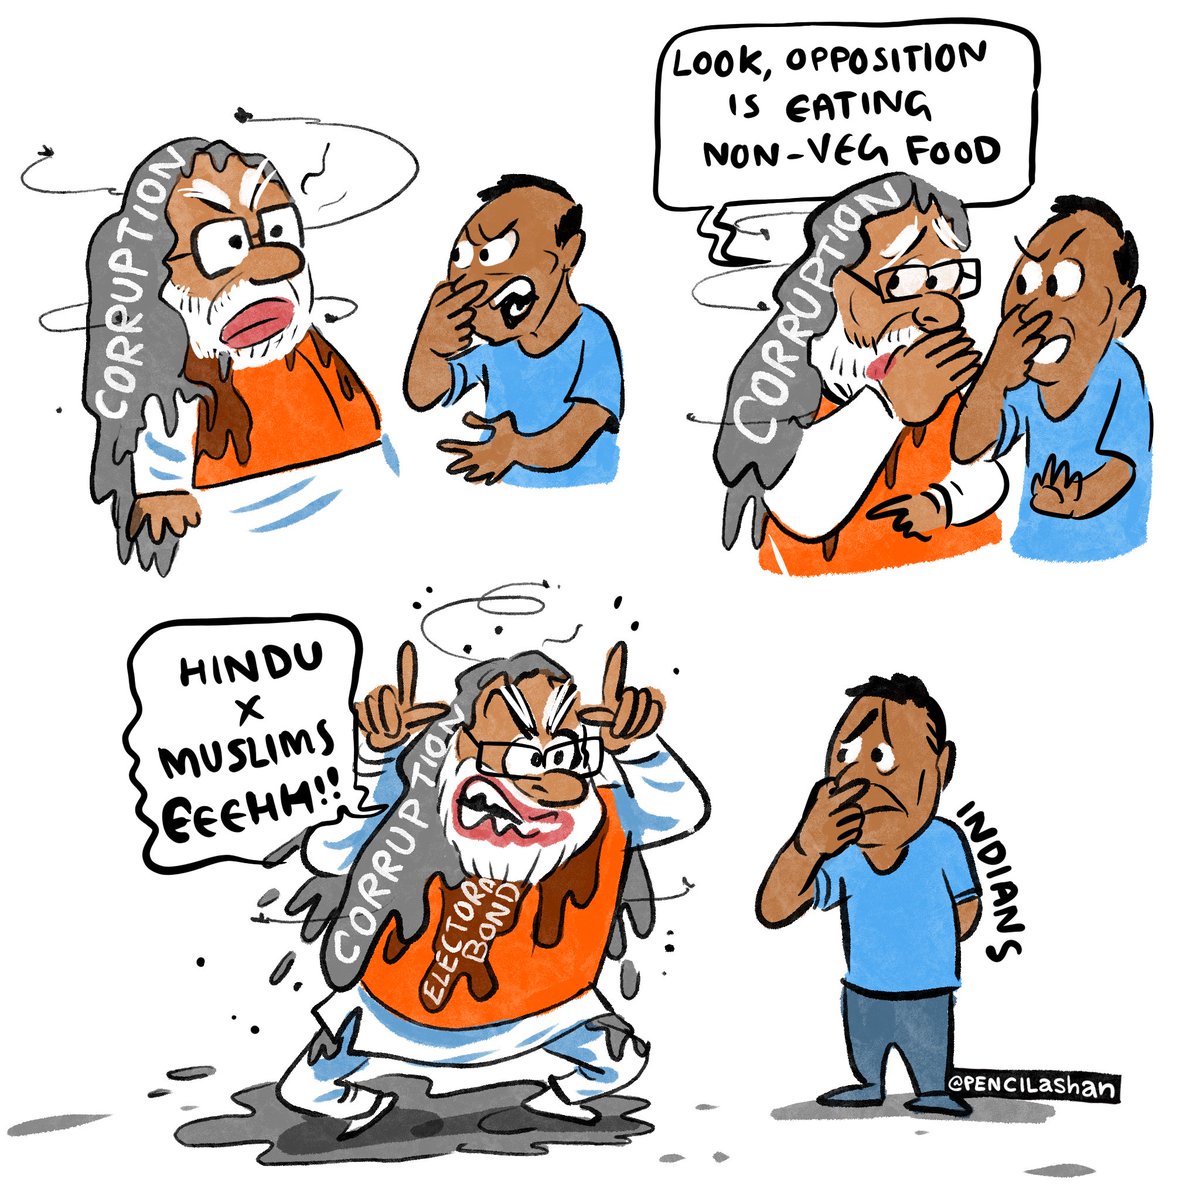 🙄🙄😏
#savindia #lastchancetosaveindia #votewisely #indiaelection2024 #indiaelection #election2024 #stopspreadinghatred #indian #indians #india #politicalcartoons #cartoons